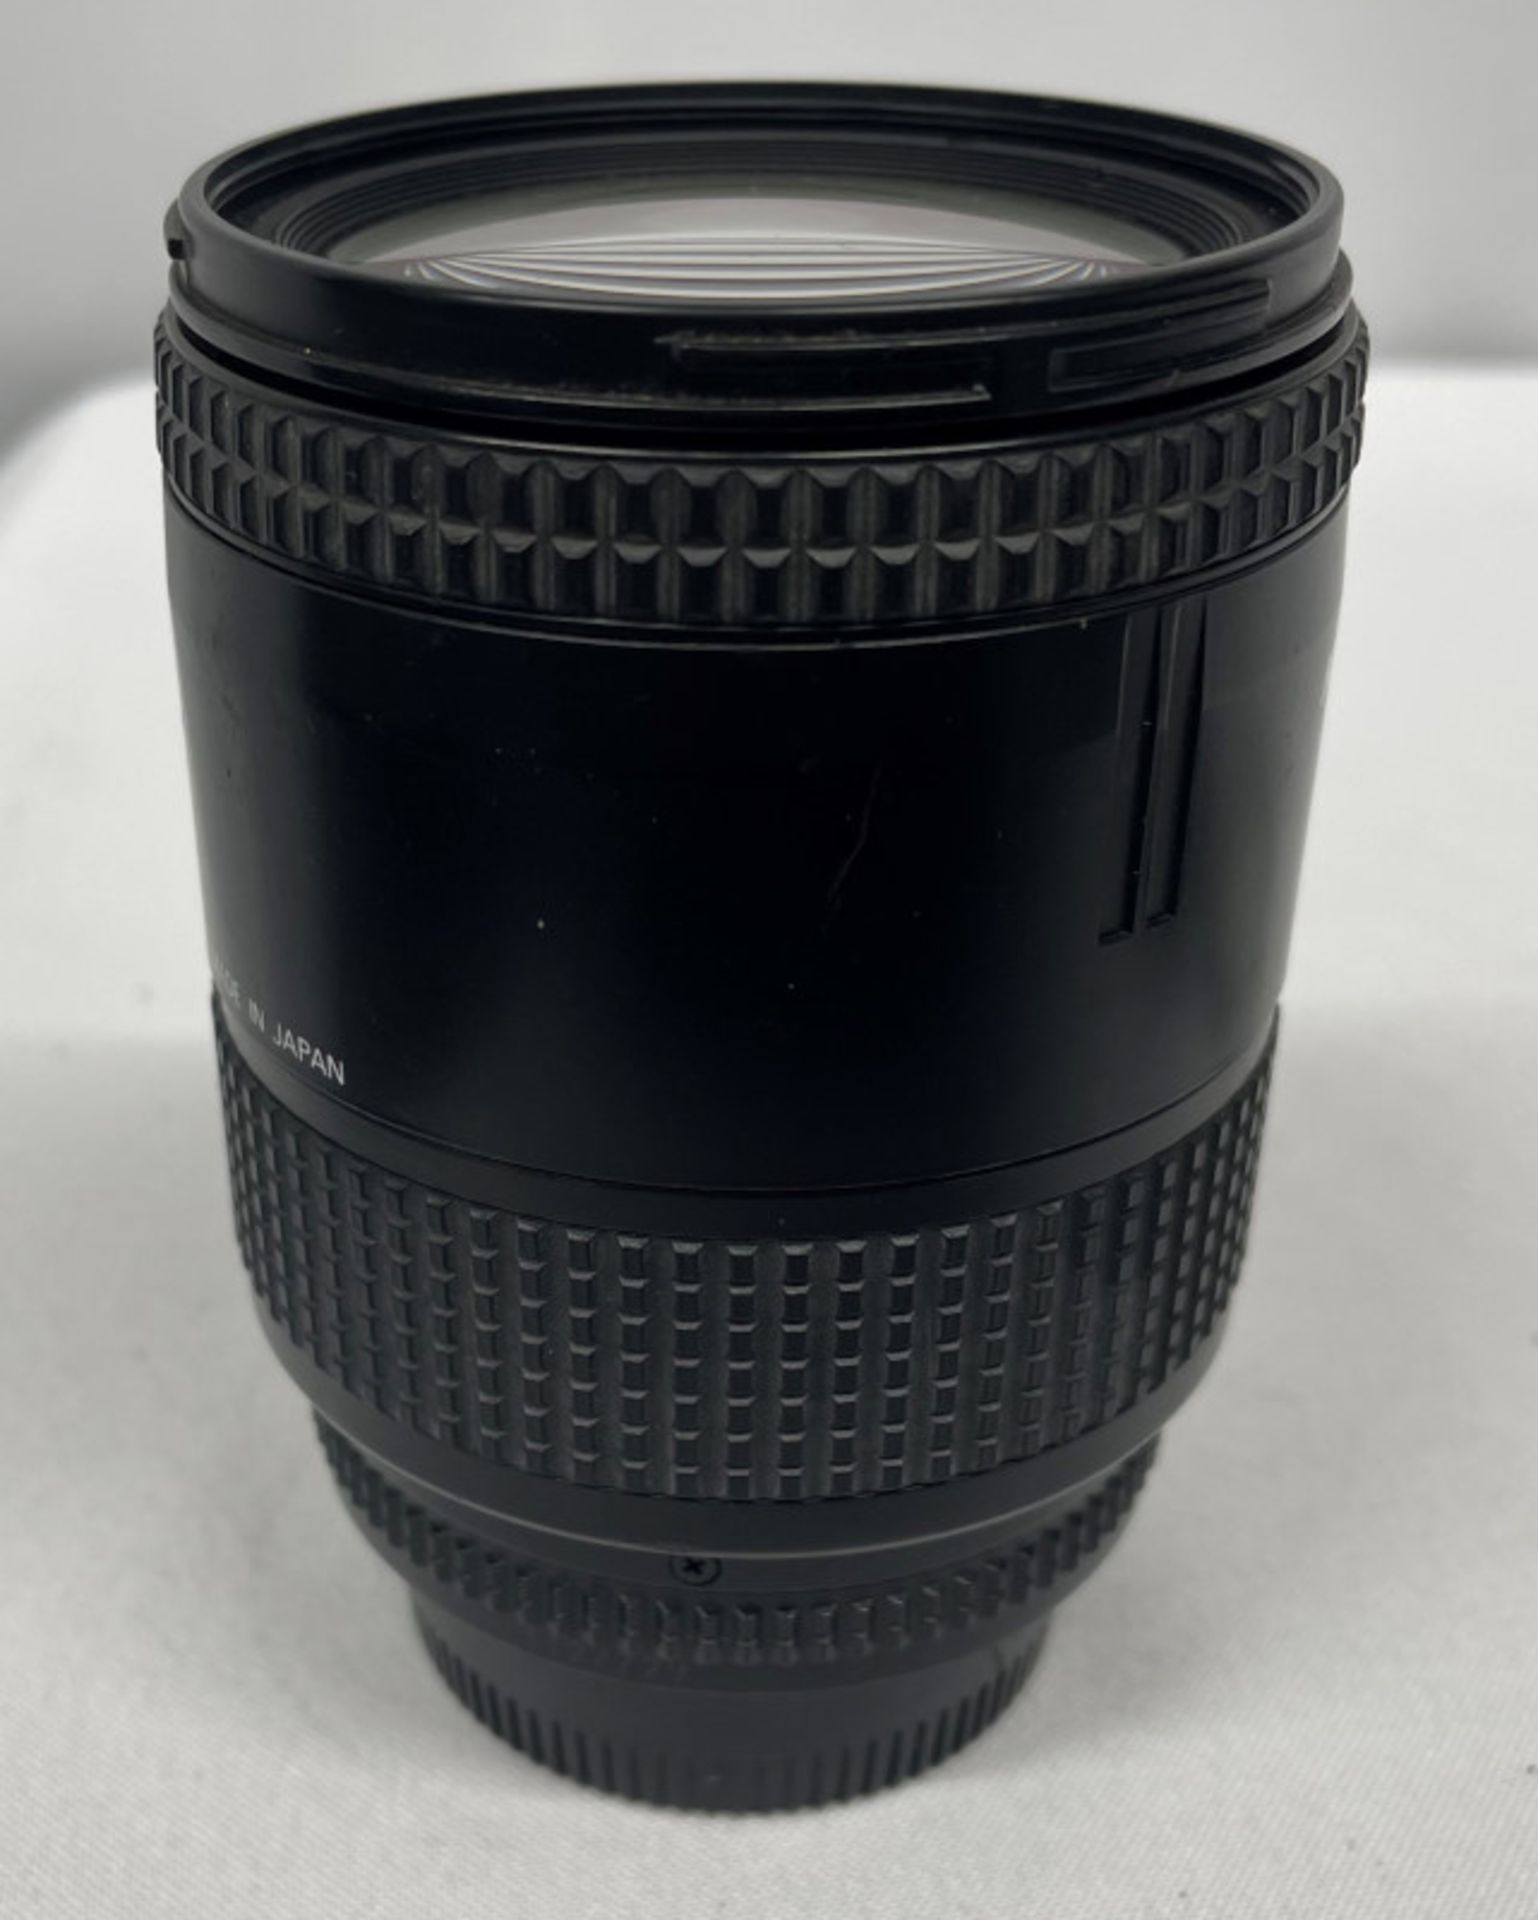 Nikon AF Nikkor 28-85mm - 1:3.5-4.5 Lens - Serial No. 3127729 with HOYA 62mm UV(O) Filter - Image 3 of 7